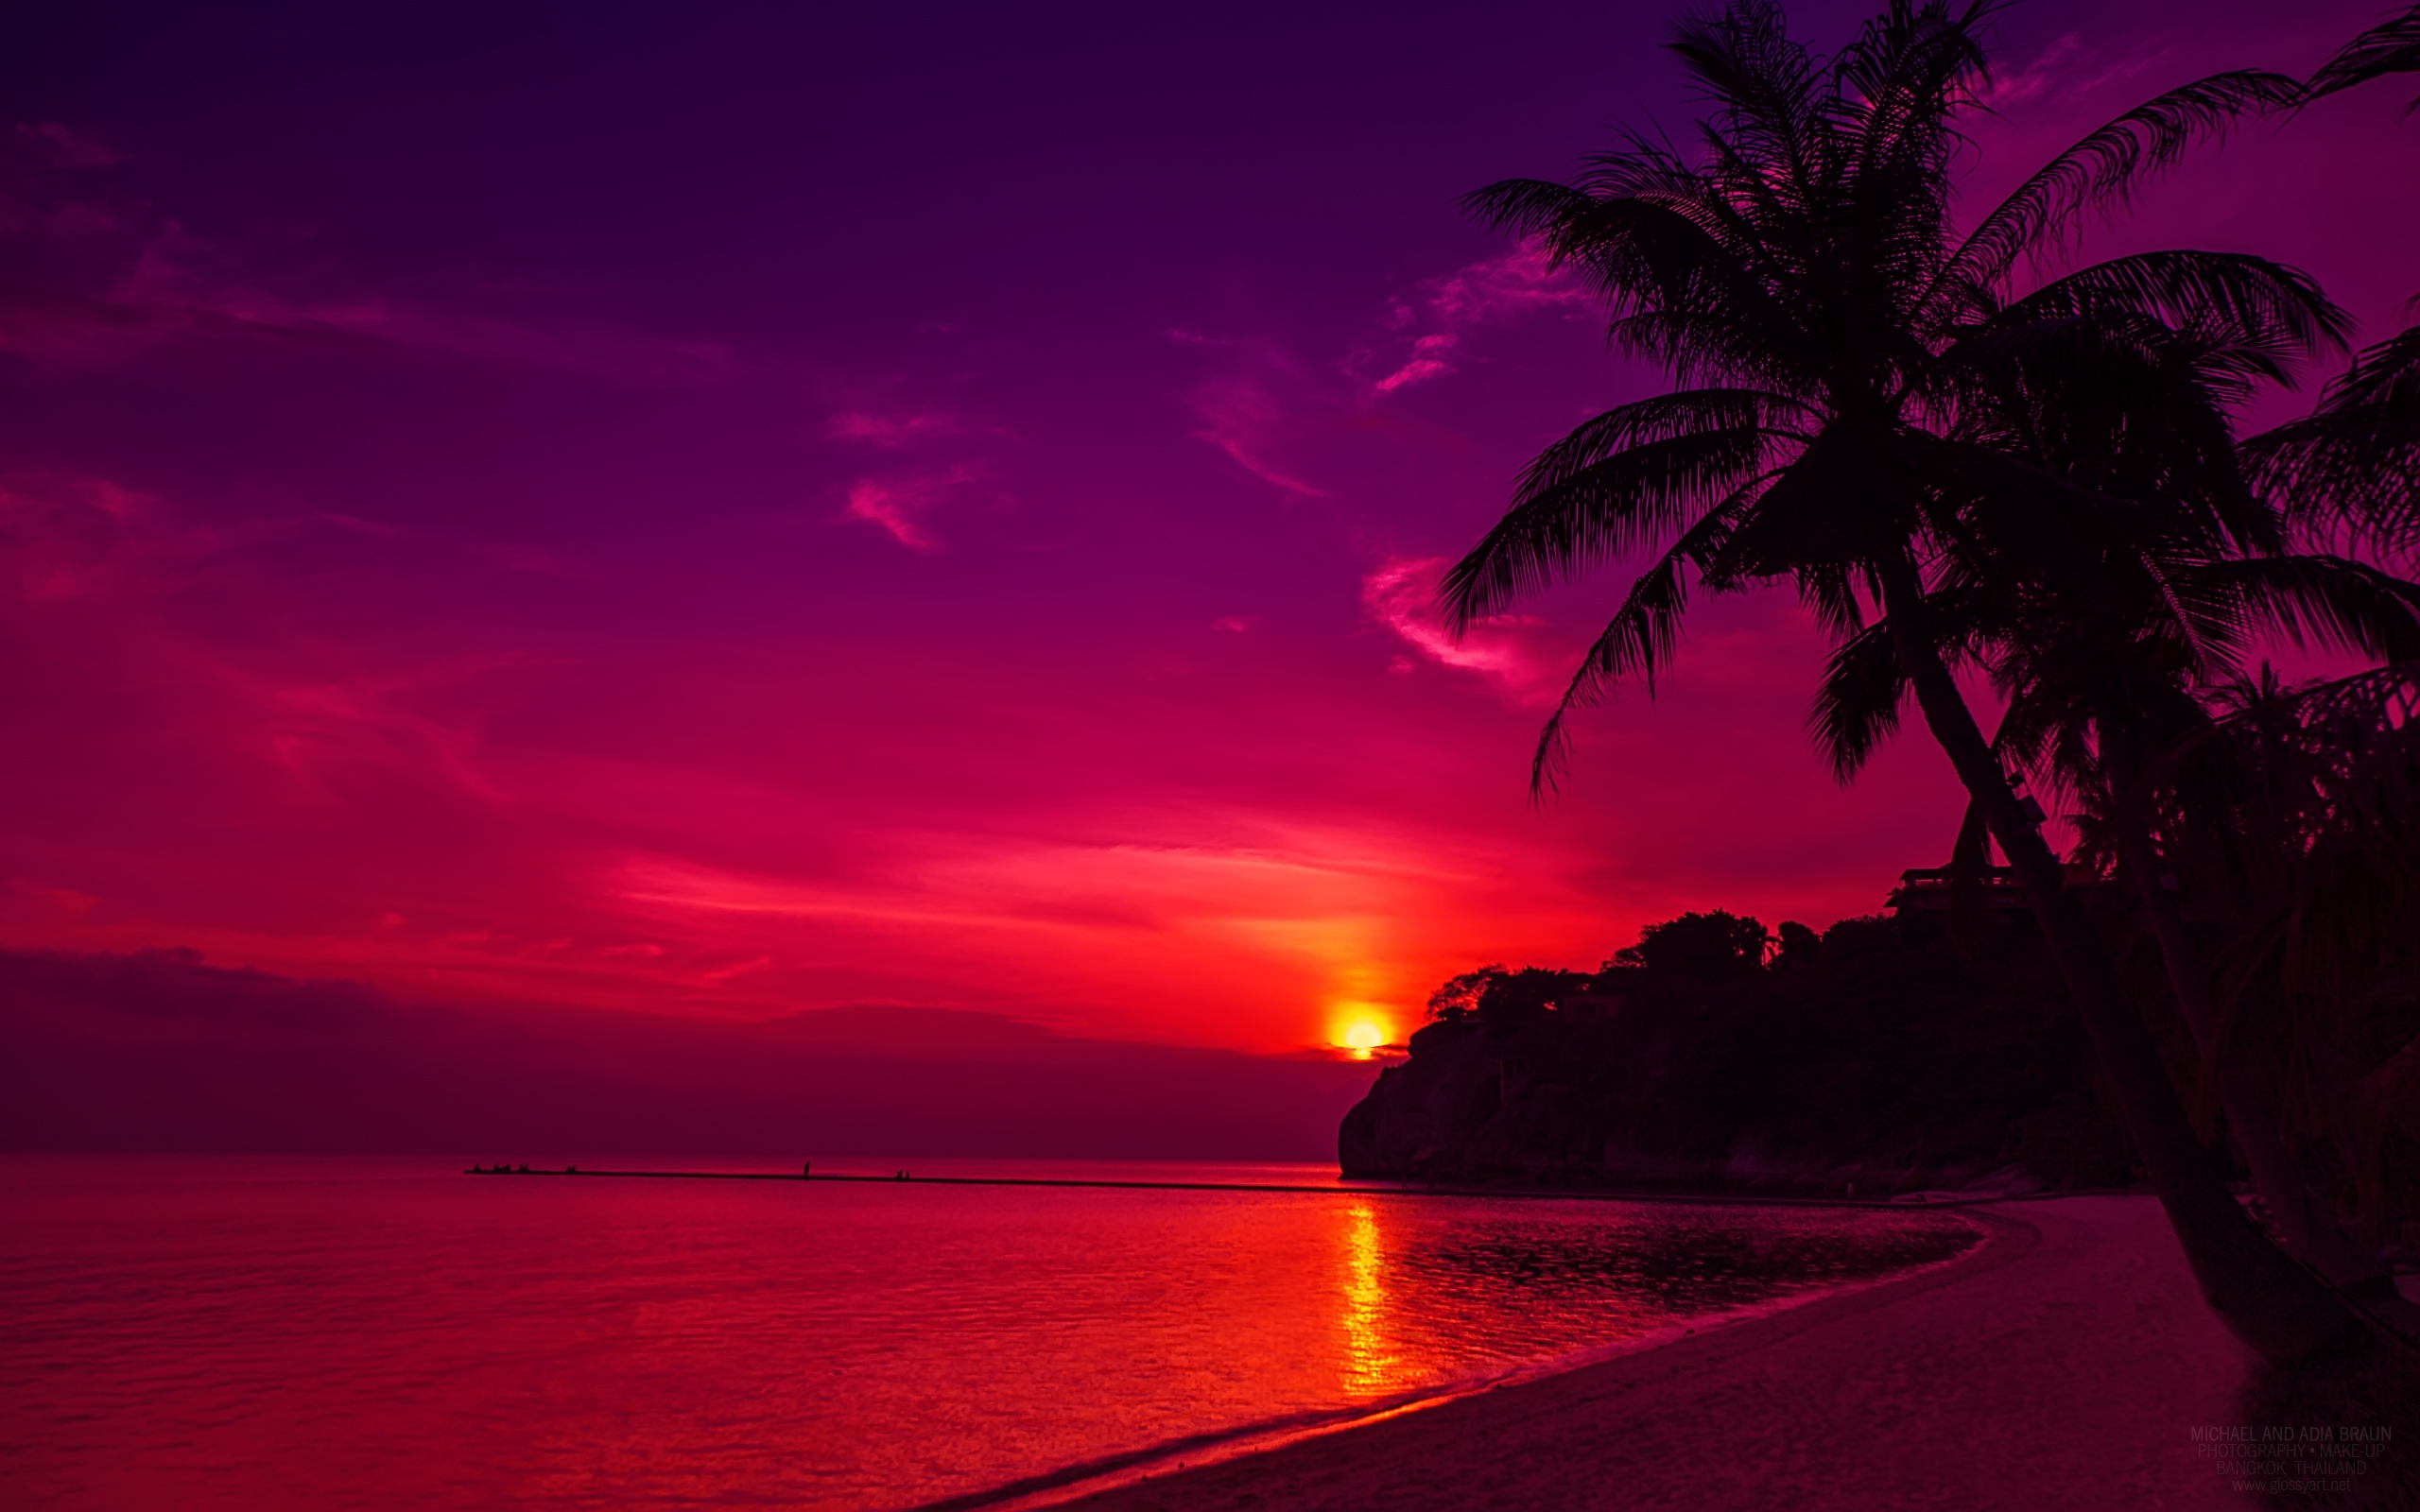 Thailand Beach Sunset958073401 - Thailand Beach Sunset - Thailand, sunset, Nightfall, Beach